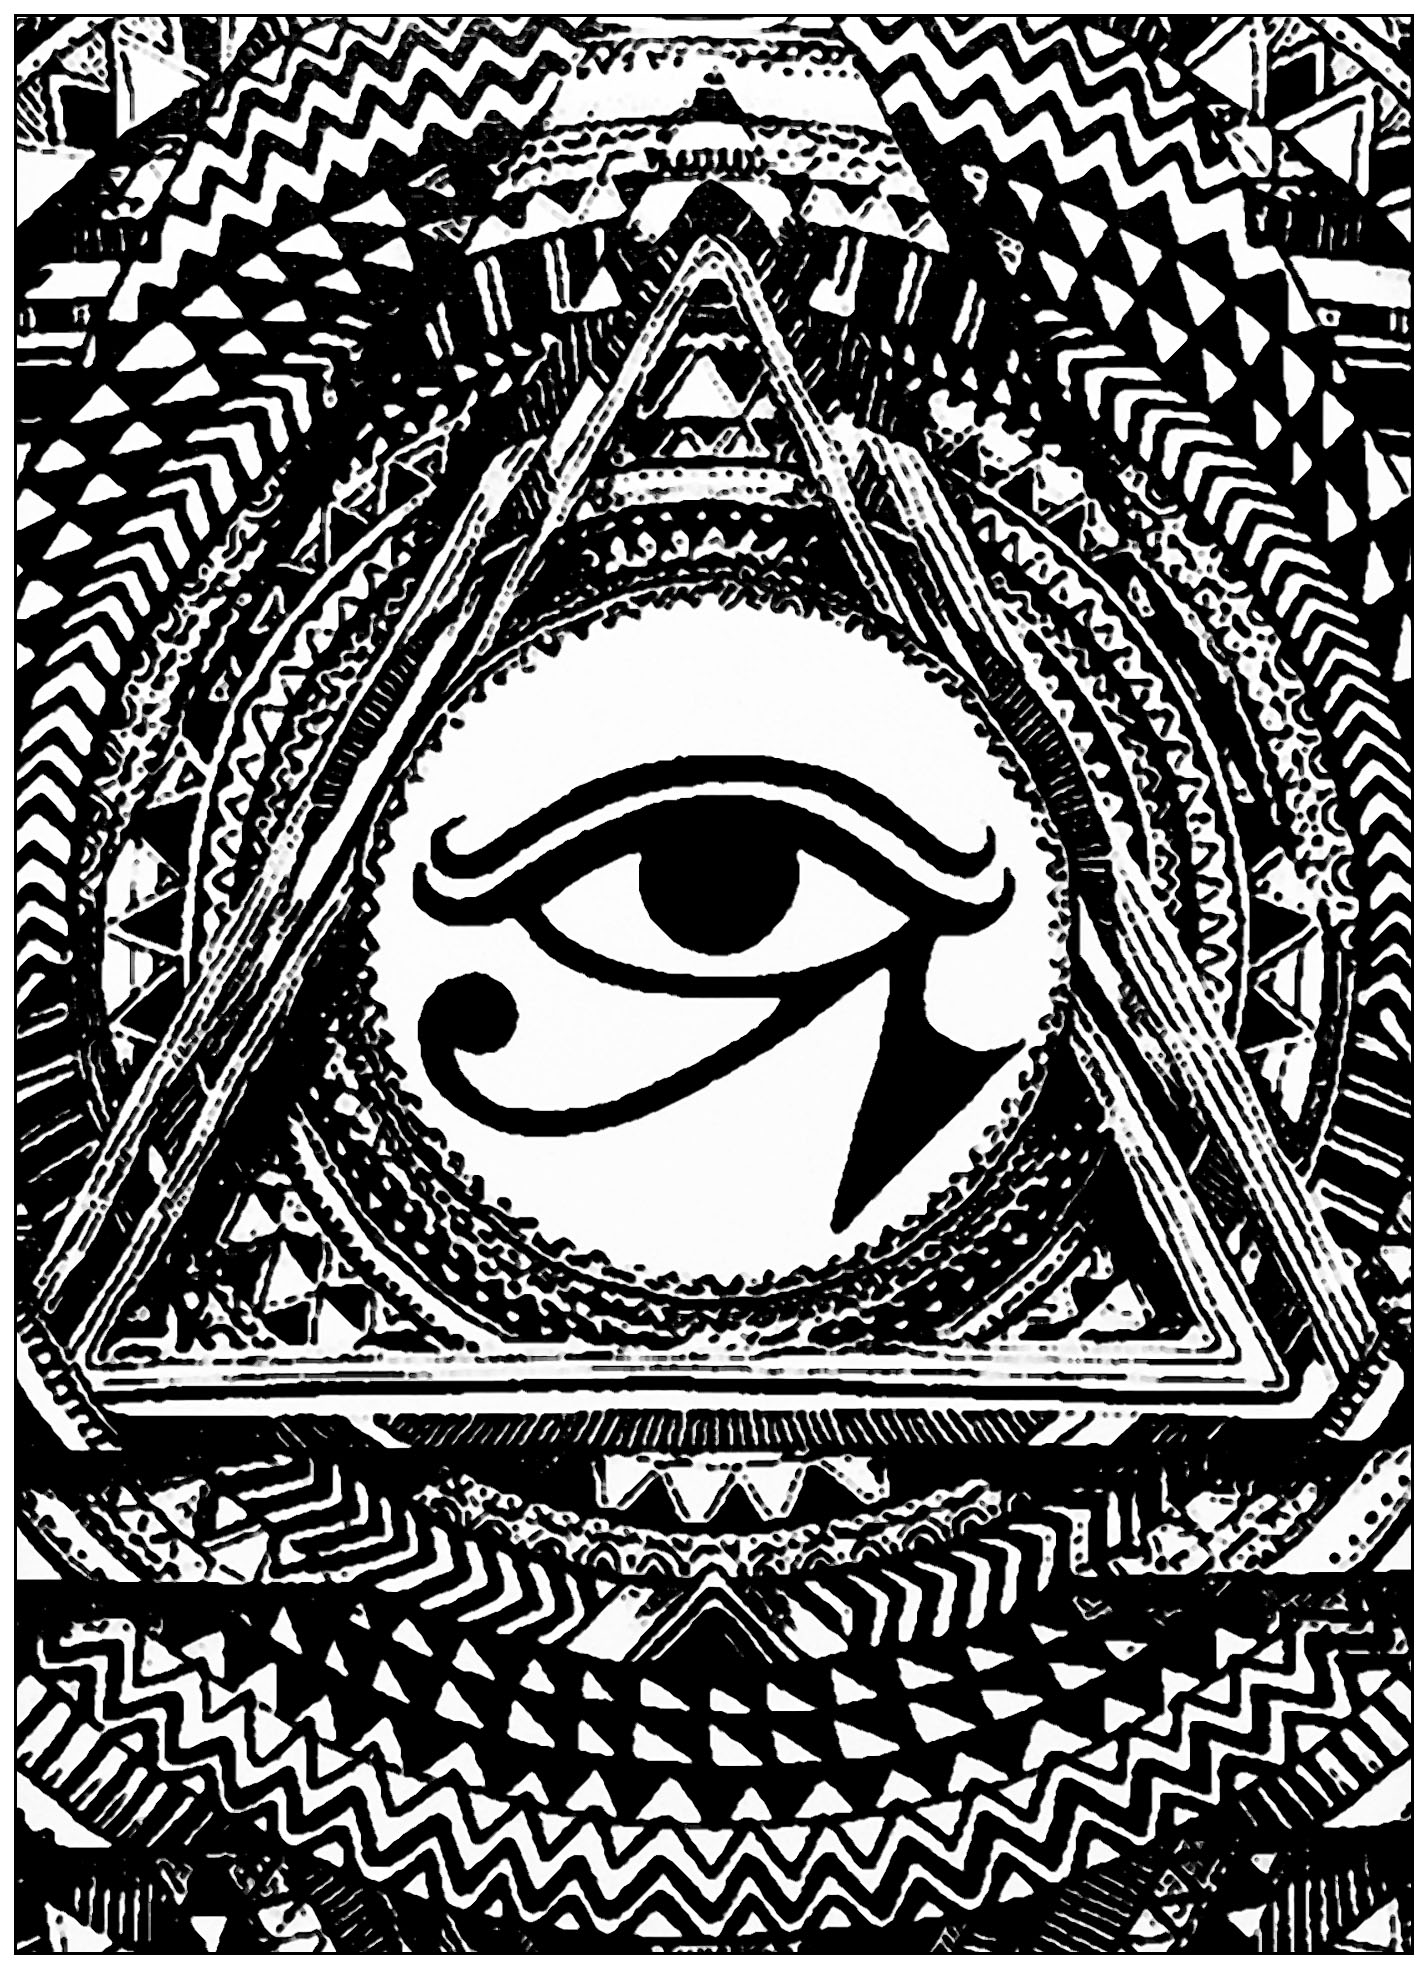 Ojo de Horus en un triángulo. El Ojo de Horus se utilizaba como signo de prosperidad y protección, derivado del mito de Isis y Osiris. Este símbolo tiene una sorprendente conexión entre estructura y función neuroanatómica.